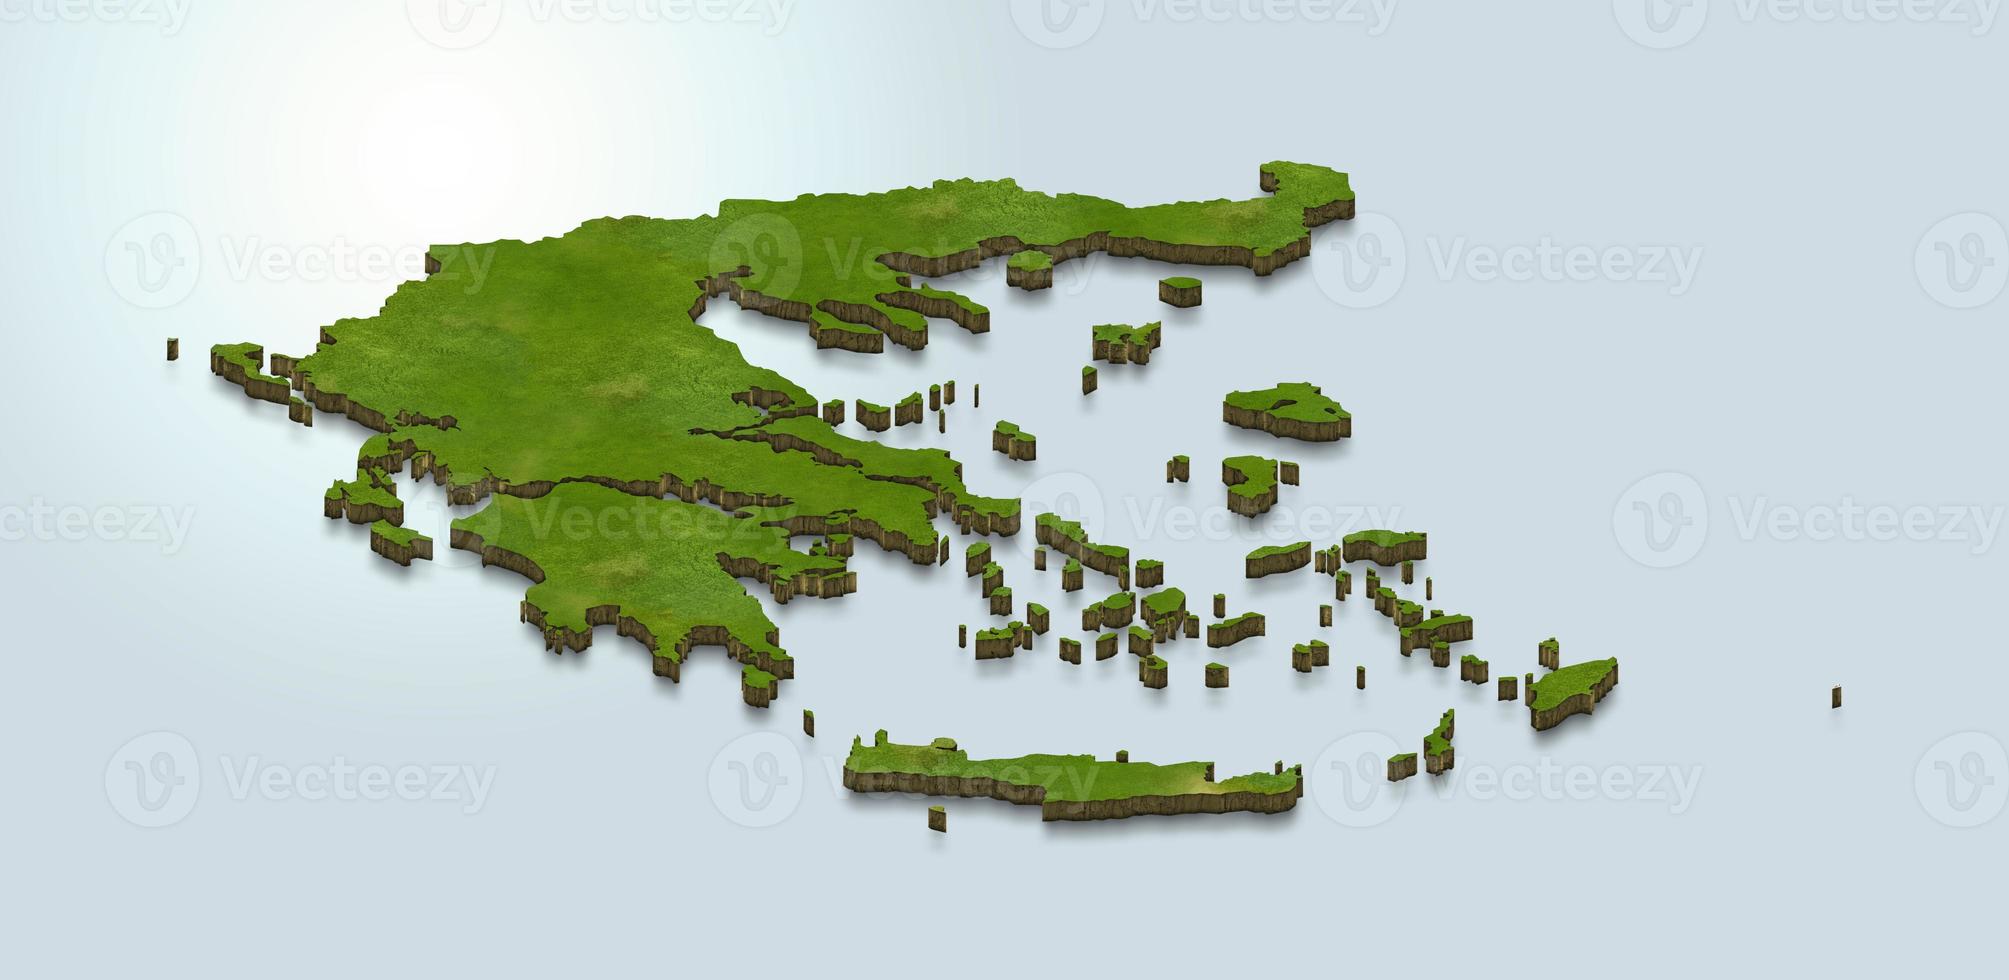 Ilustración de mapa 3D de Grecia foto